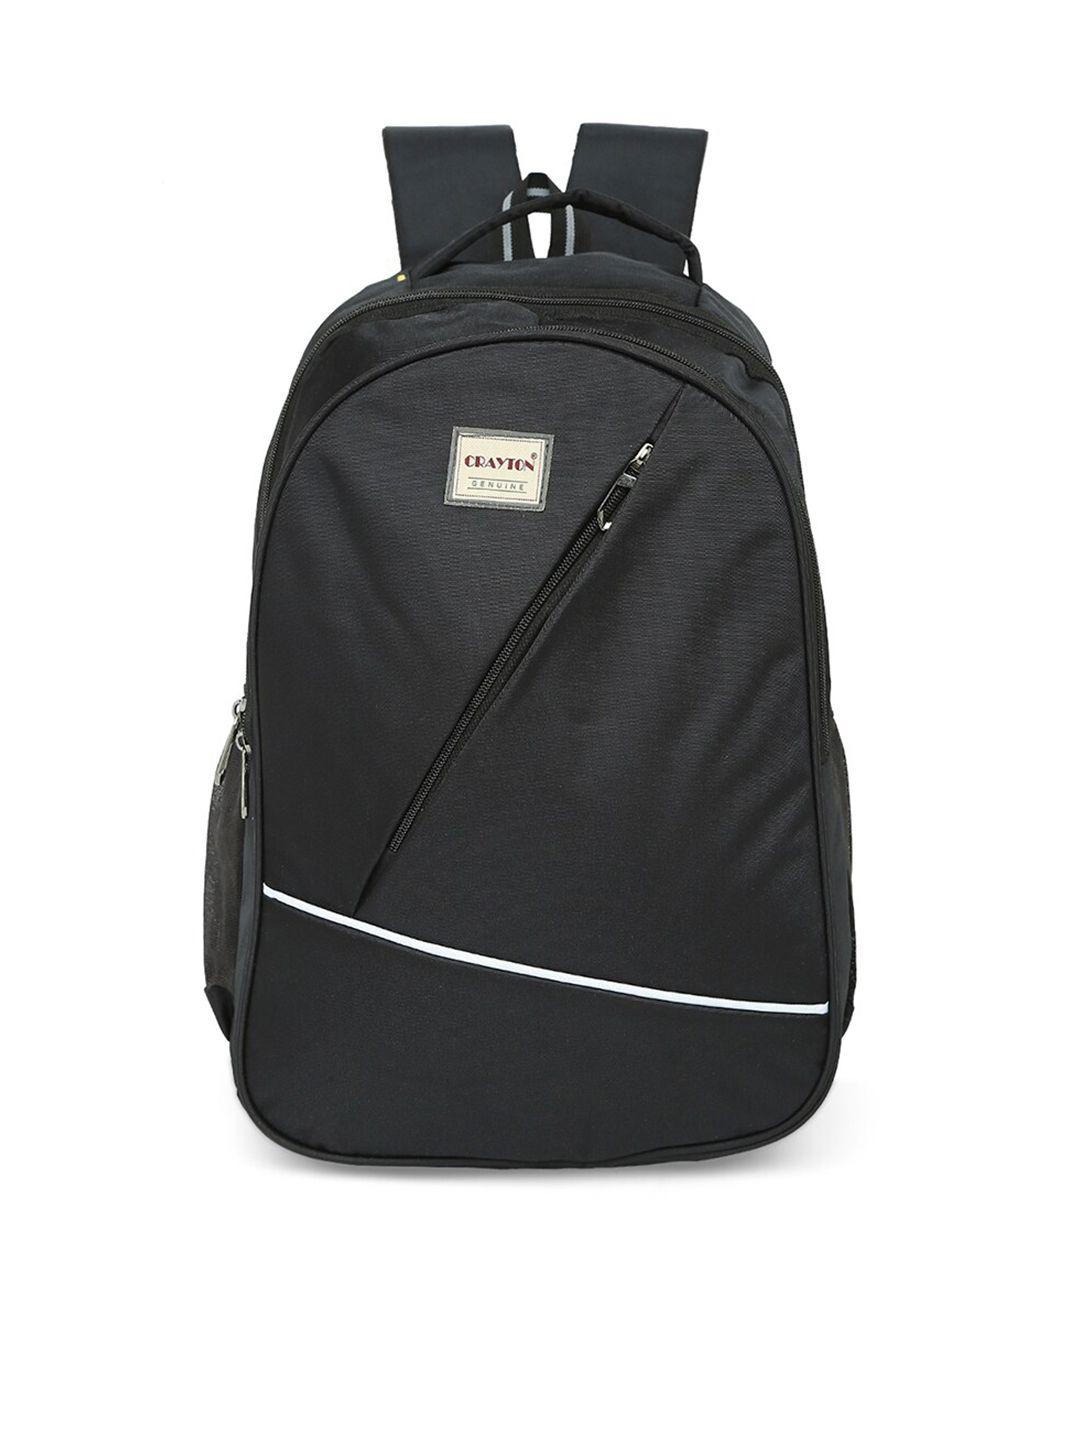 crayton unisex laptop backpack